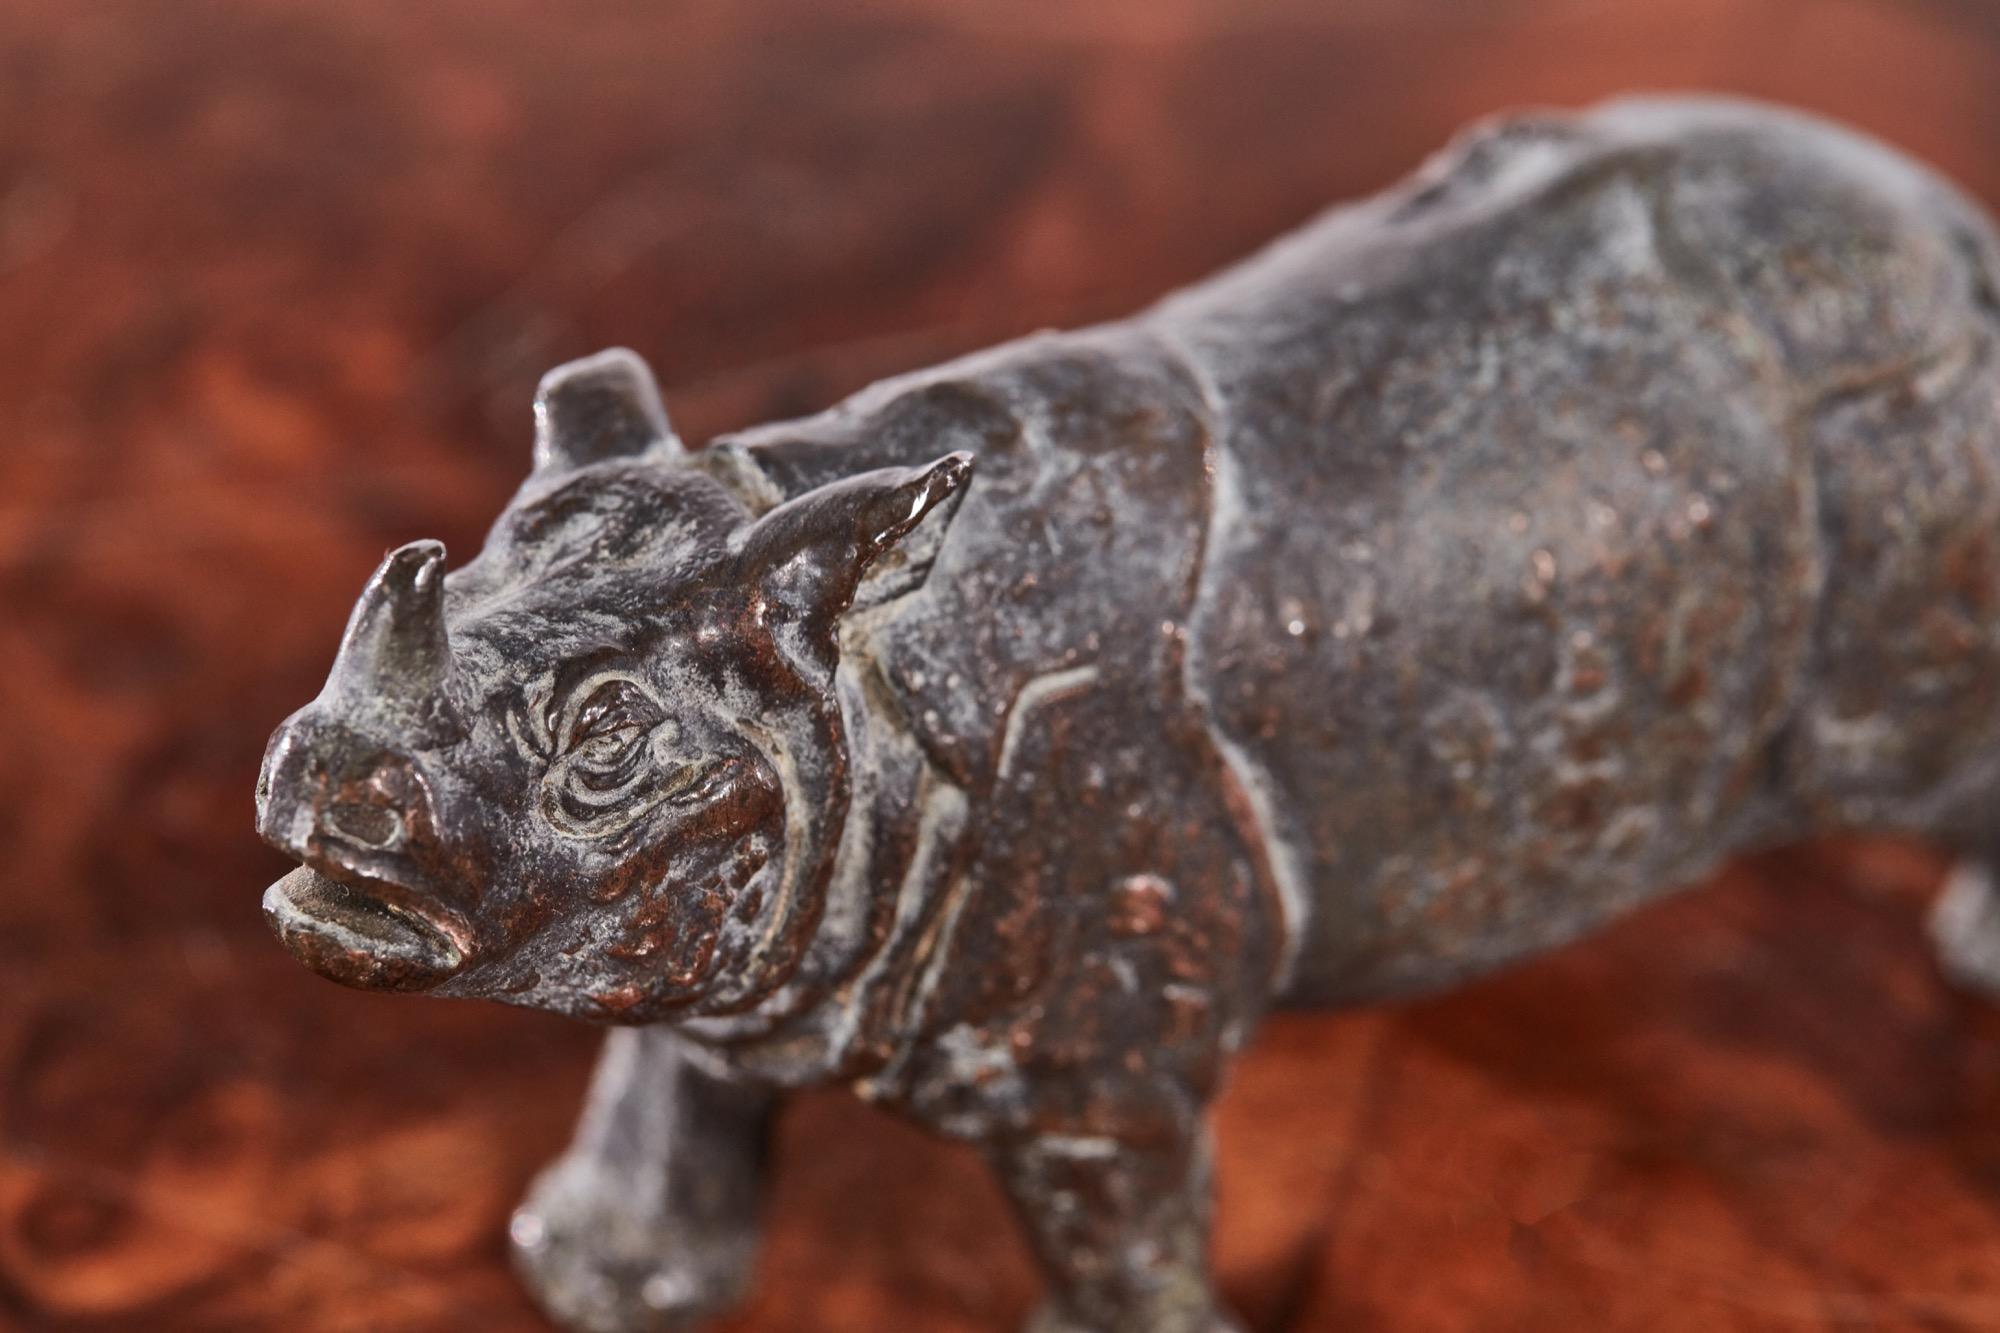 Rhinocéros miniature antique en bronze, conçu et fabriqué selon les normes les plus strictes et en parfait état d'origine.

Un exemple de vie très désirable.

Mesures : Hauteur : 5 cm - 1.97 in
Largeur : 3 cm - 1.18 in
Profondeur : 8 cm - 3.15